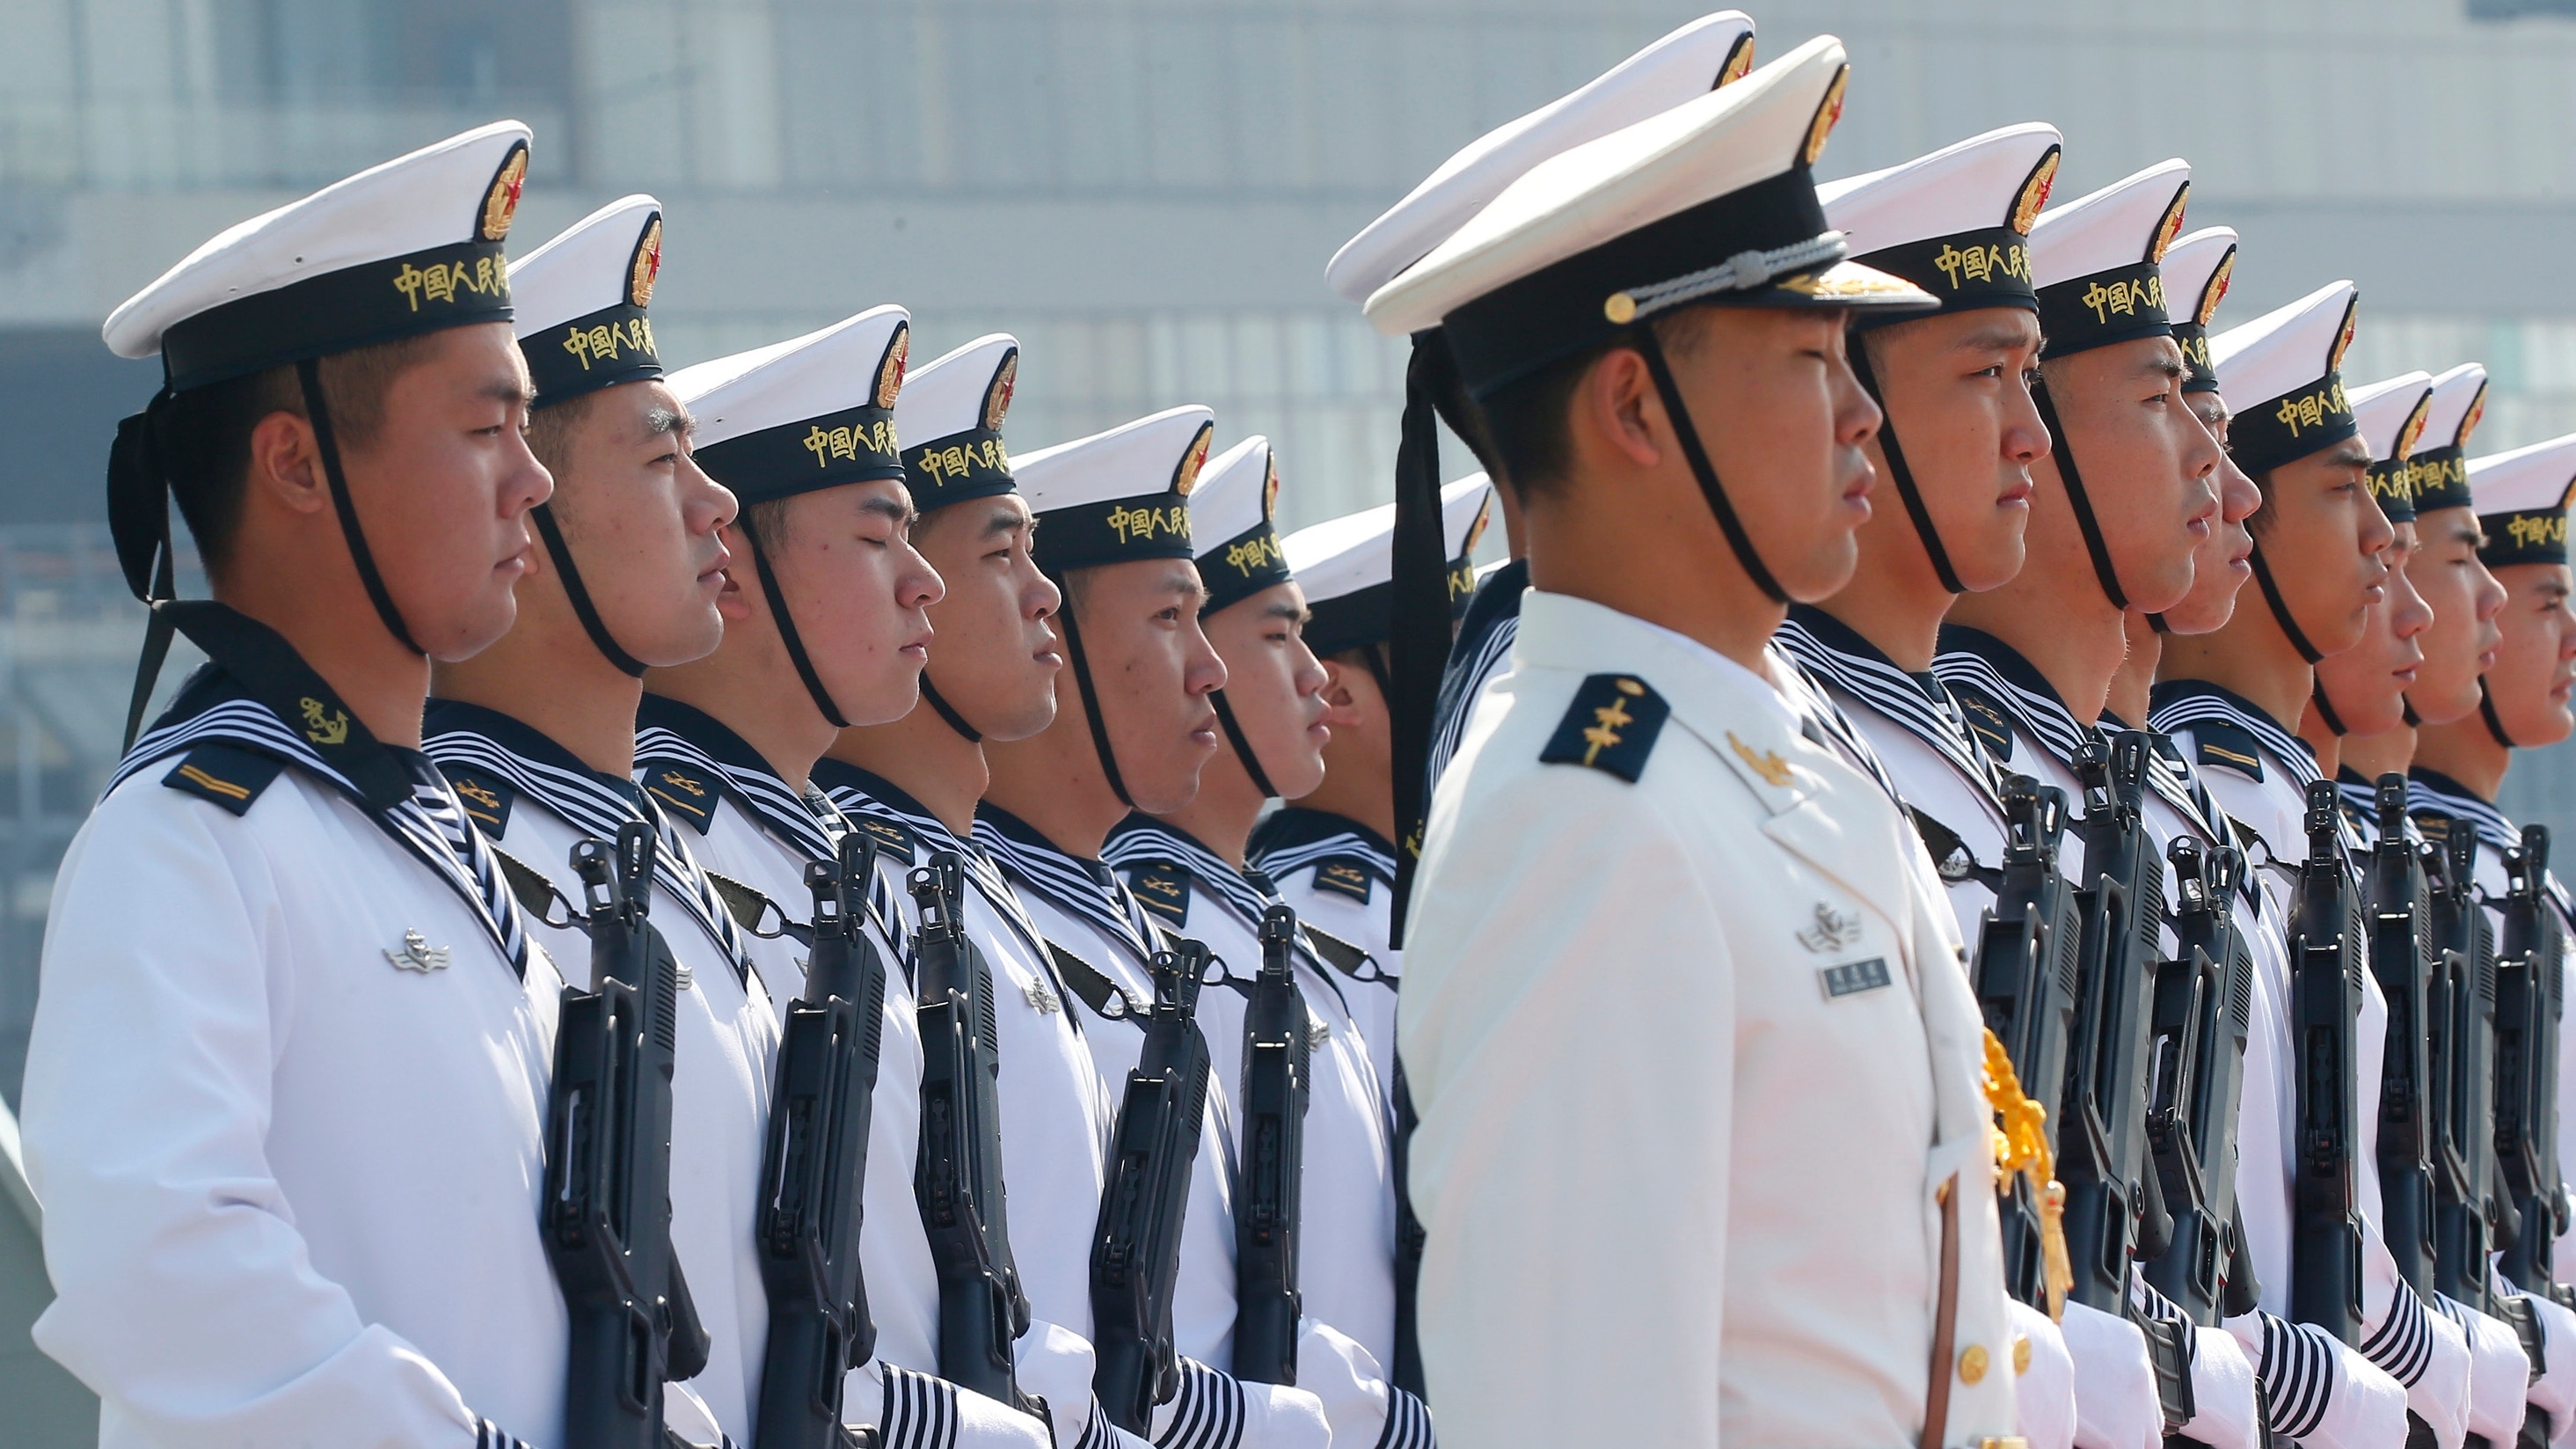 冰川融化出現新航線英國海軍稱中國構成戰略威脅